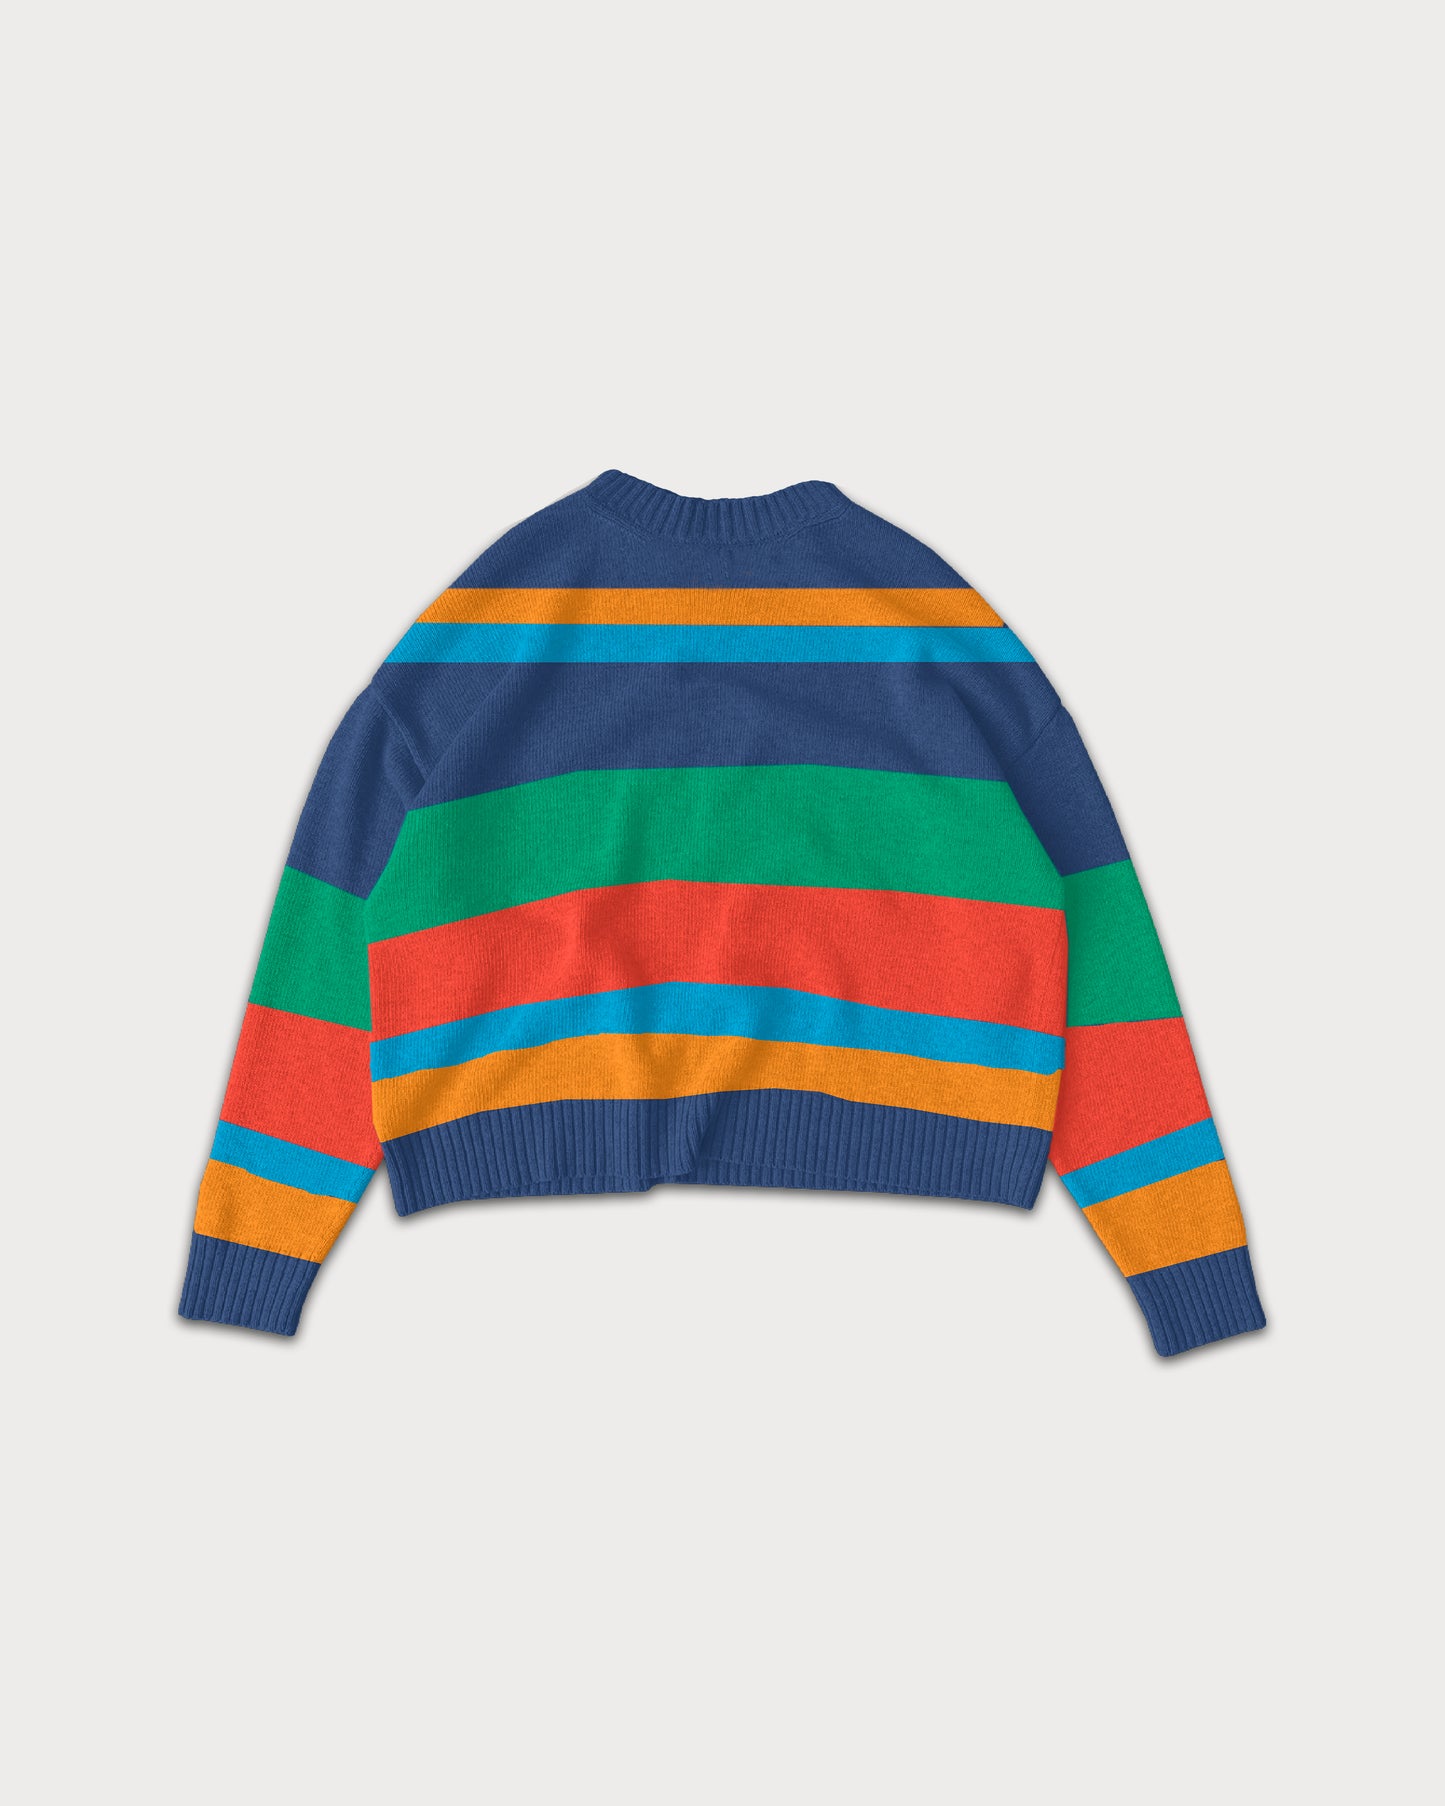 koaa – Pippi Langstrumpf "Fröhlich" – Knit Sweater multicolor